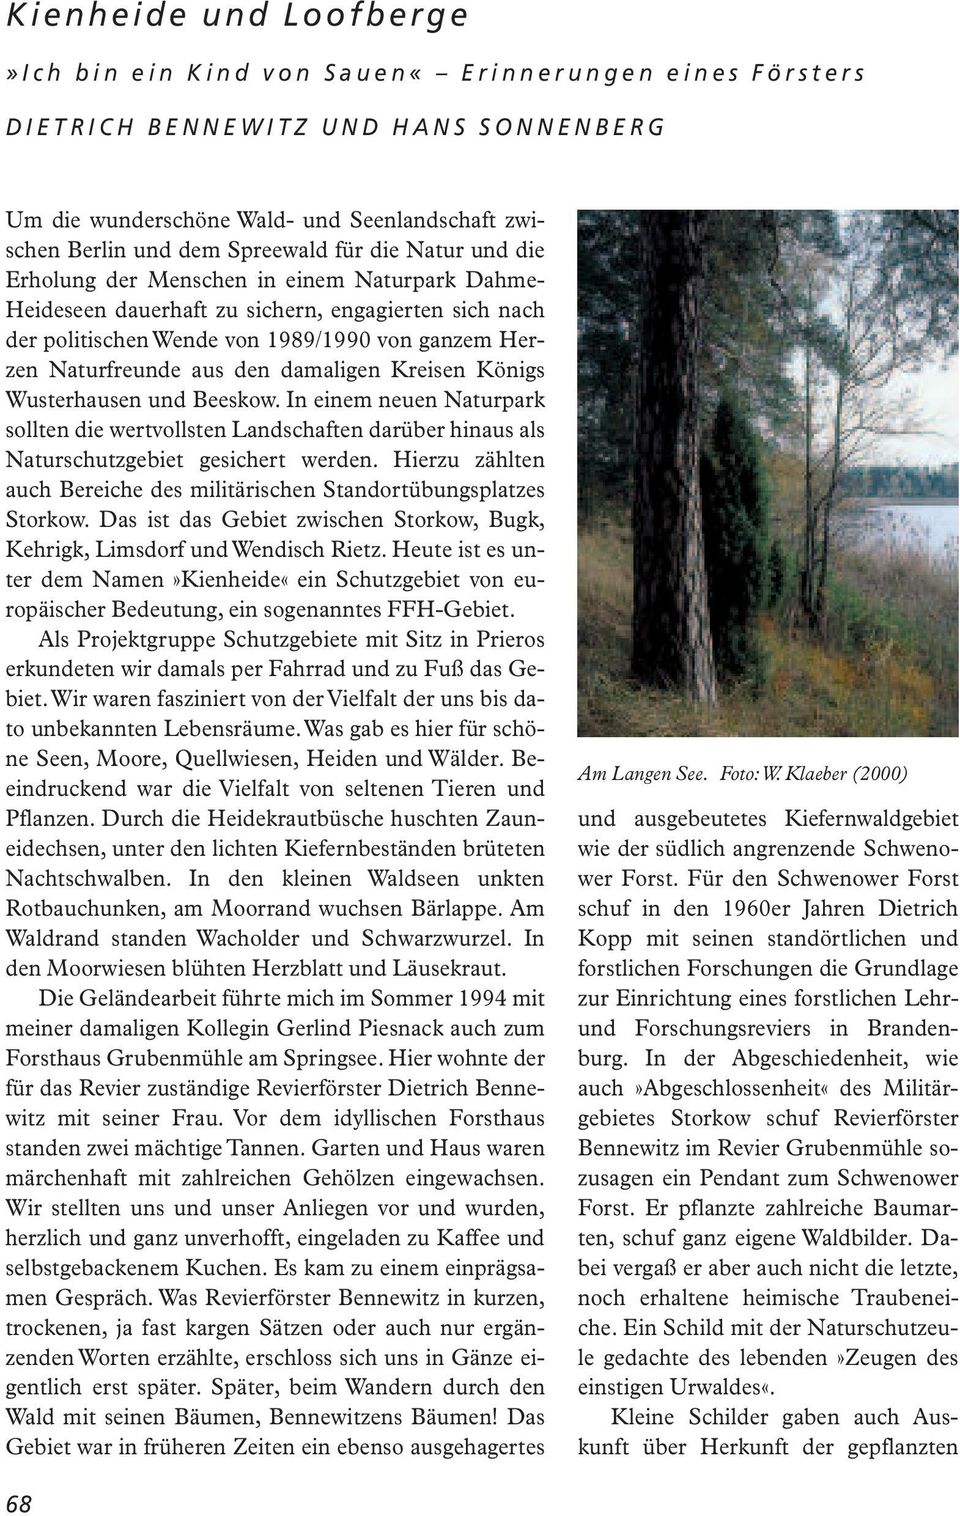 damaligen Kreisen Königs Wusterhausen und Beeskow. In einem neuen Naturpark sollten die wertvollsten Landschaften darüber hinaus als Naturschutzgebiet gesichert werden.